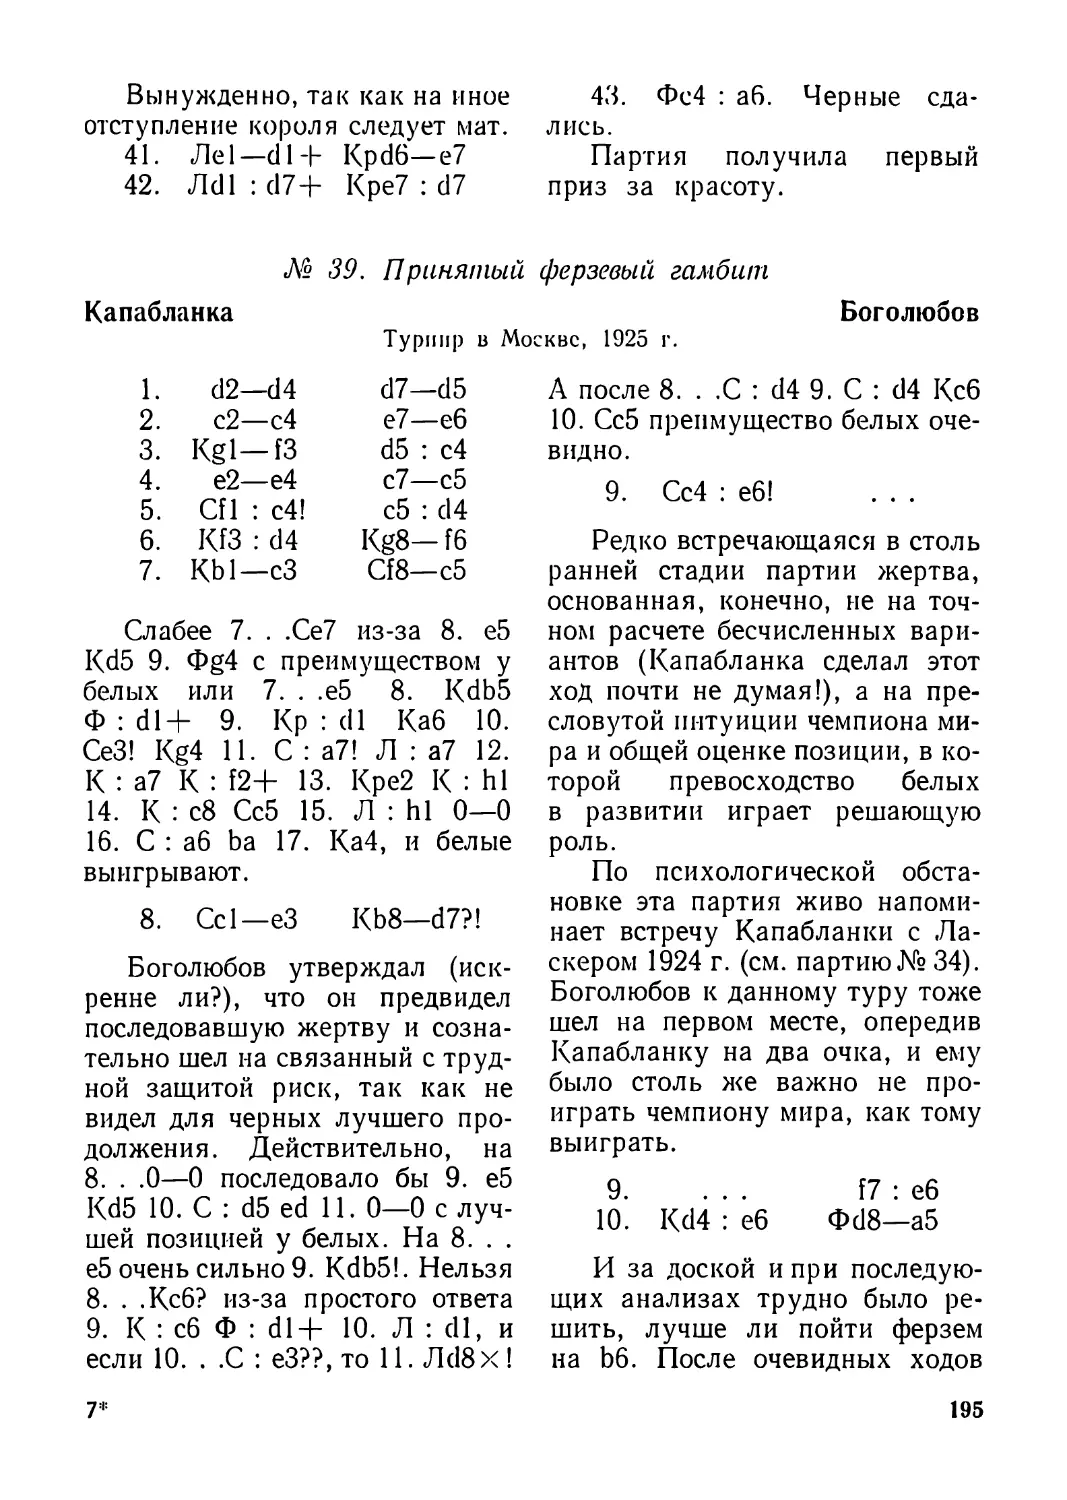 39.Капабланка — Боголюбов, турнир в Москве 1925 г.